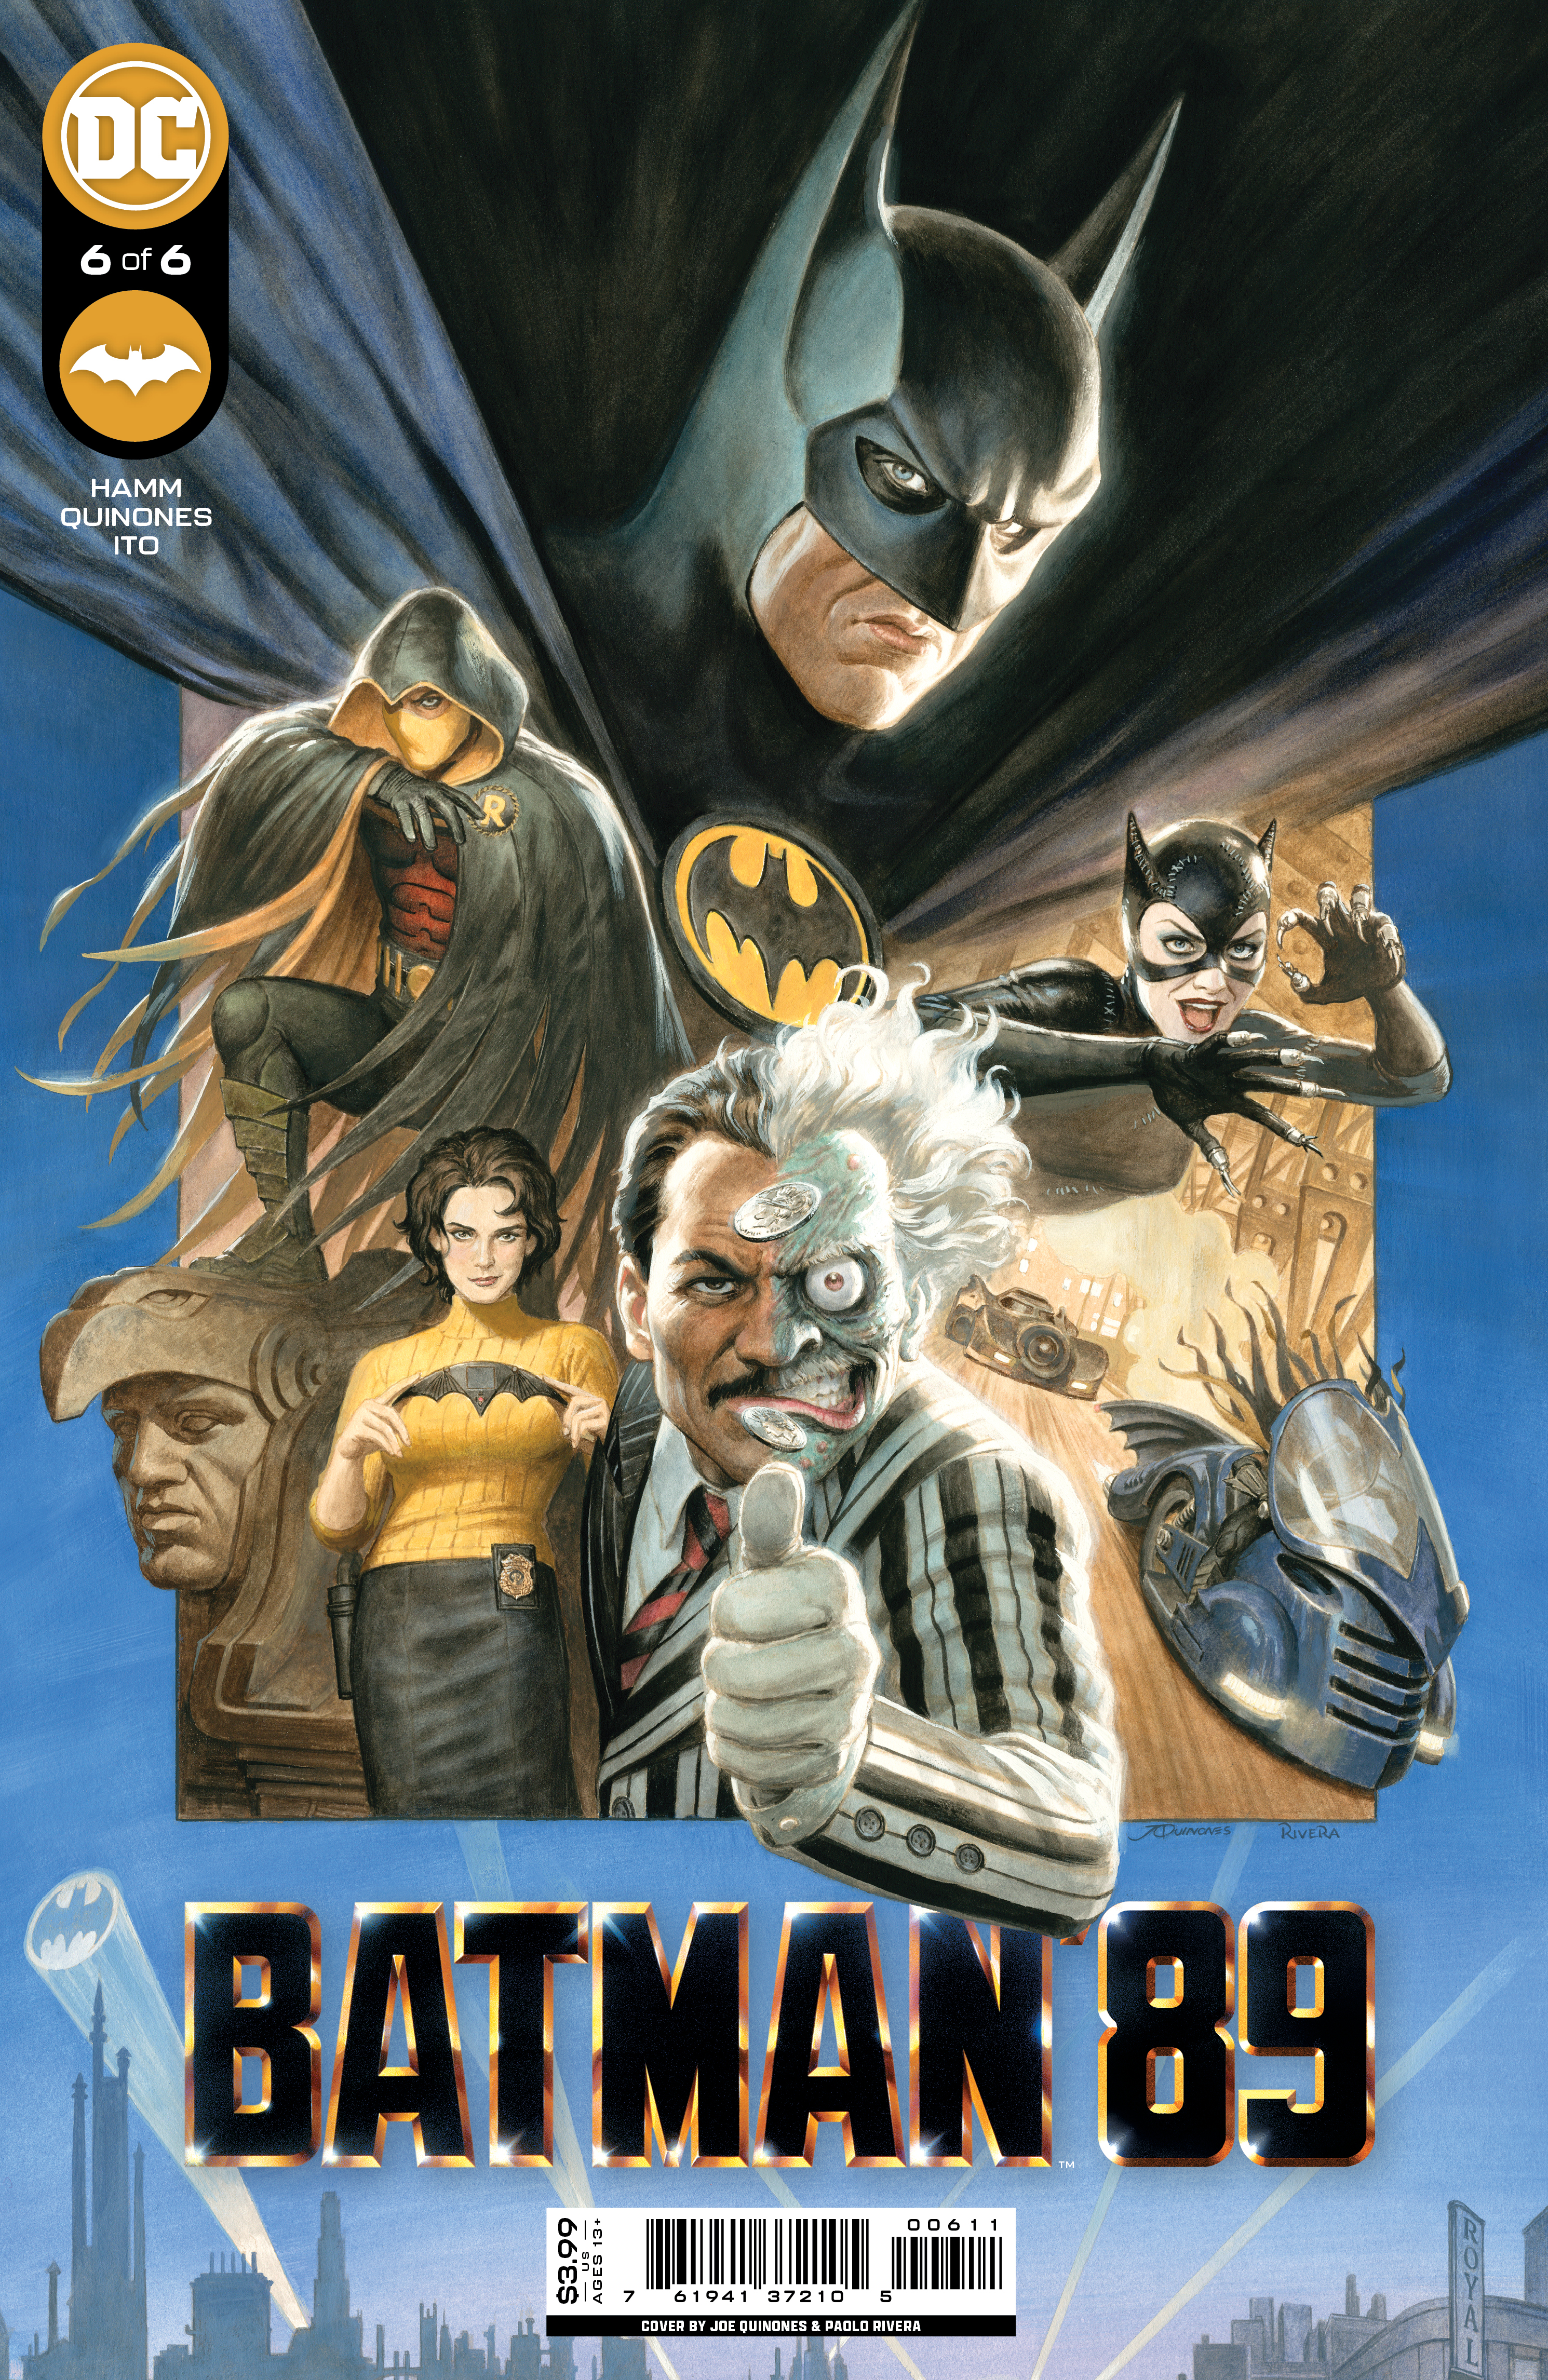 Batman 89 #6 Cover A Joe Quinones (Of 6)